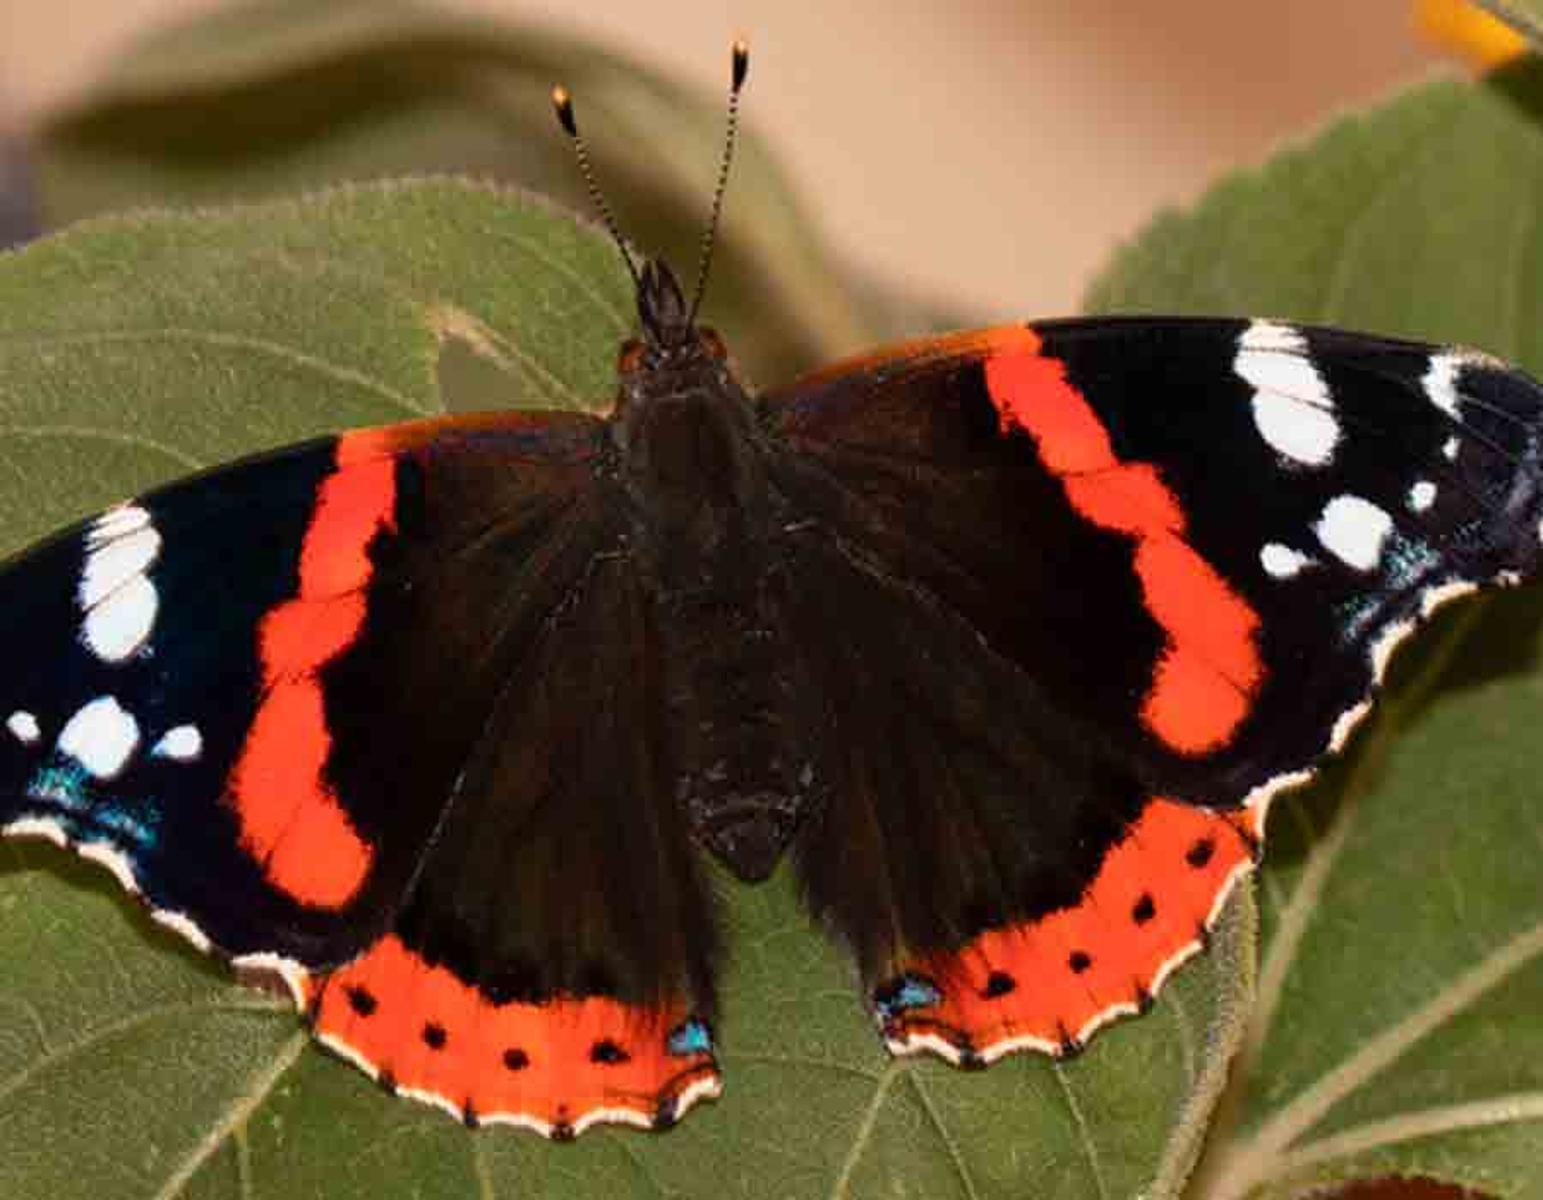 Fotografien exotischer Schmetterlinge Martin Gach, der regionale Spezialist für heimische Schmetterlinge trifft auf Regine Hakenbeck, die sich auf die Suche nach exotischen Faltern gemacht hat. Beide versuchen die Falter in ihrem Lebensraum abzulichten mit bew...